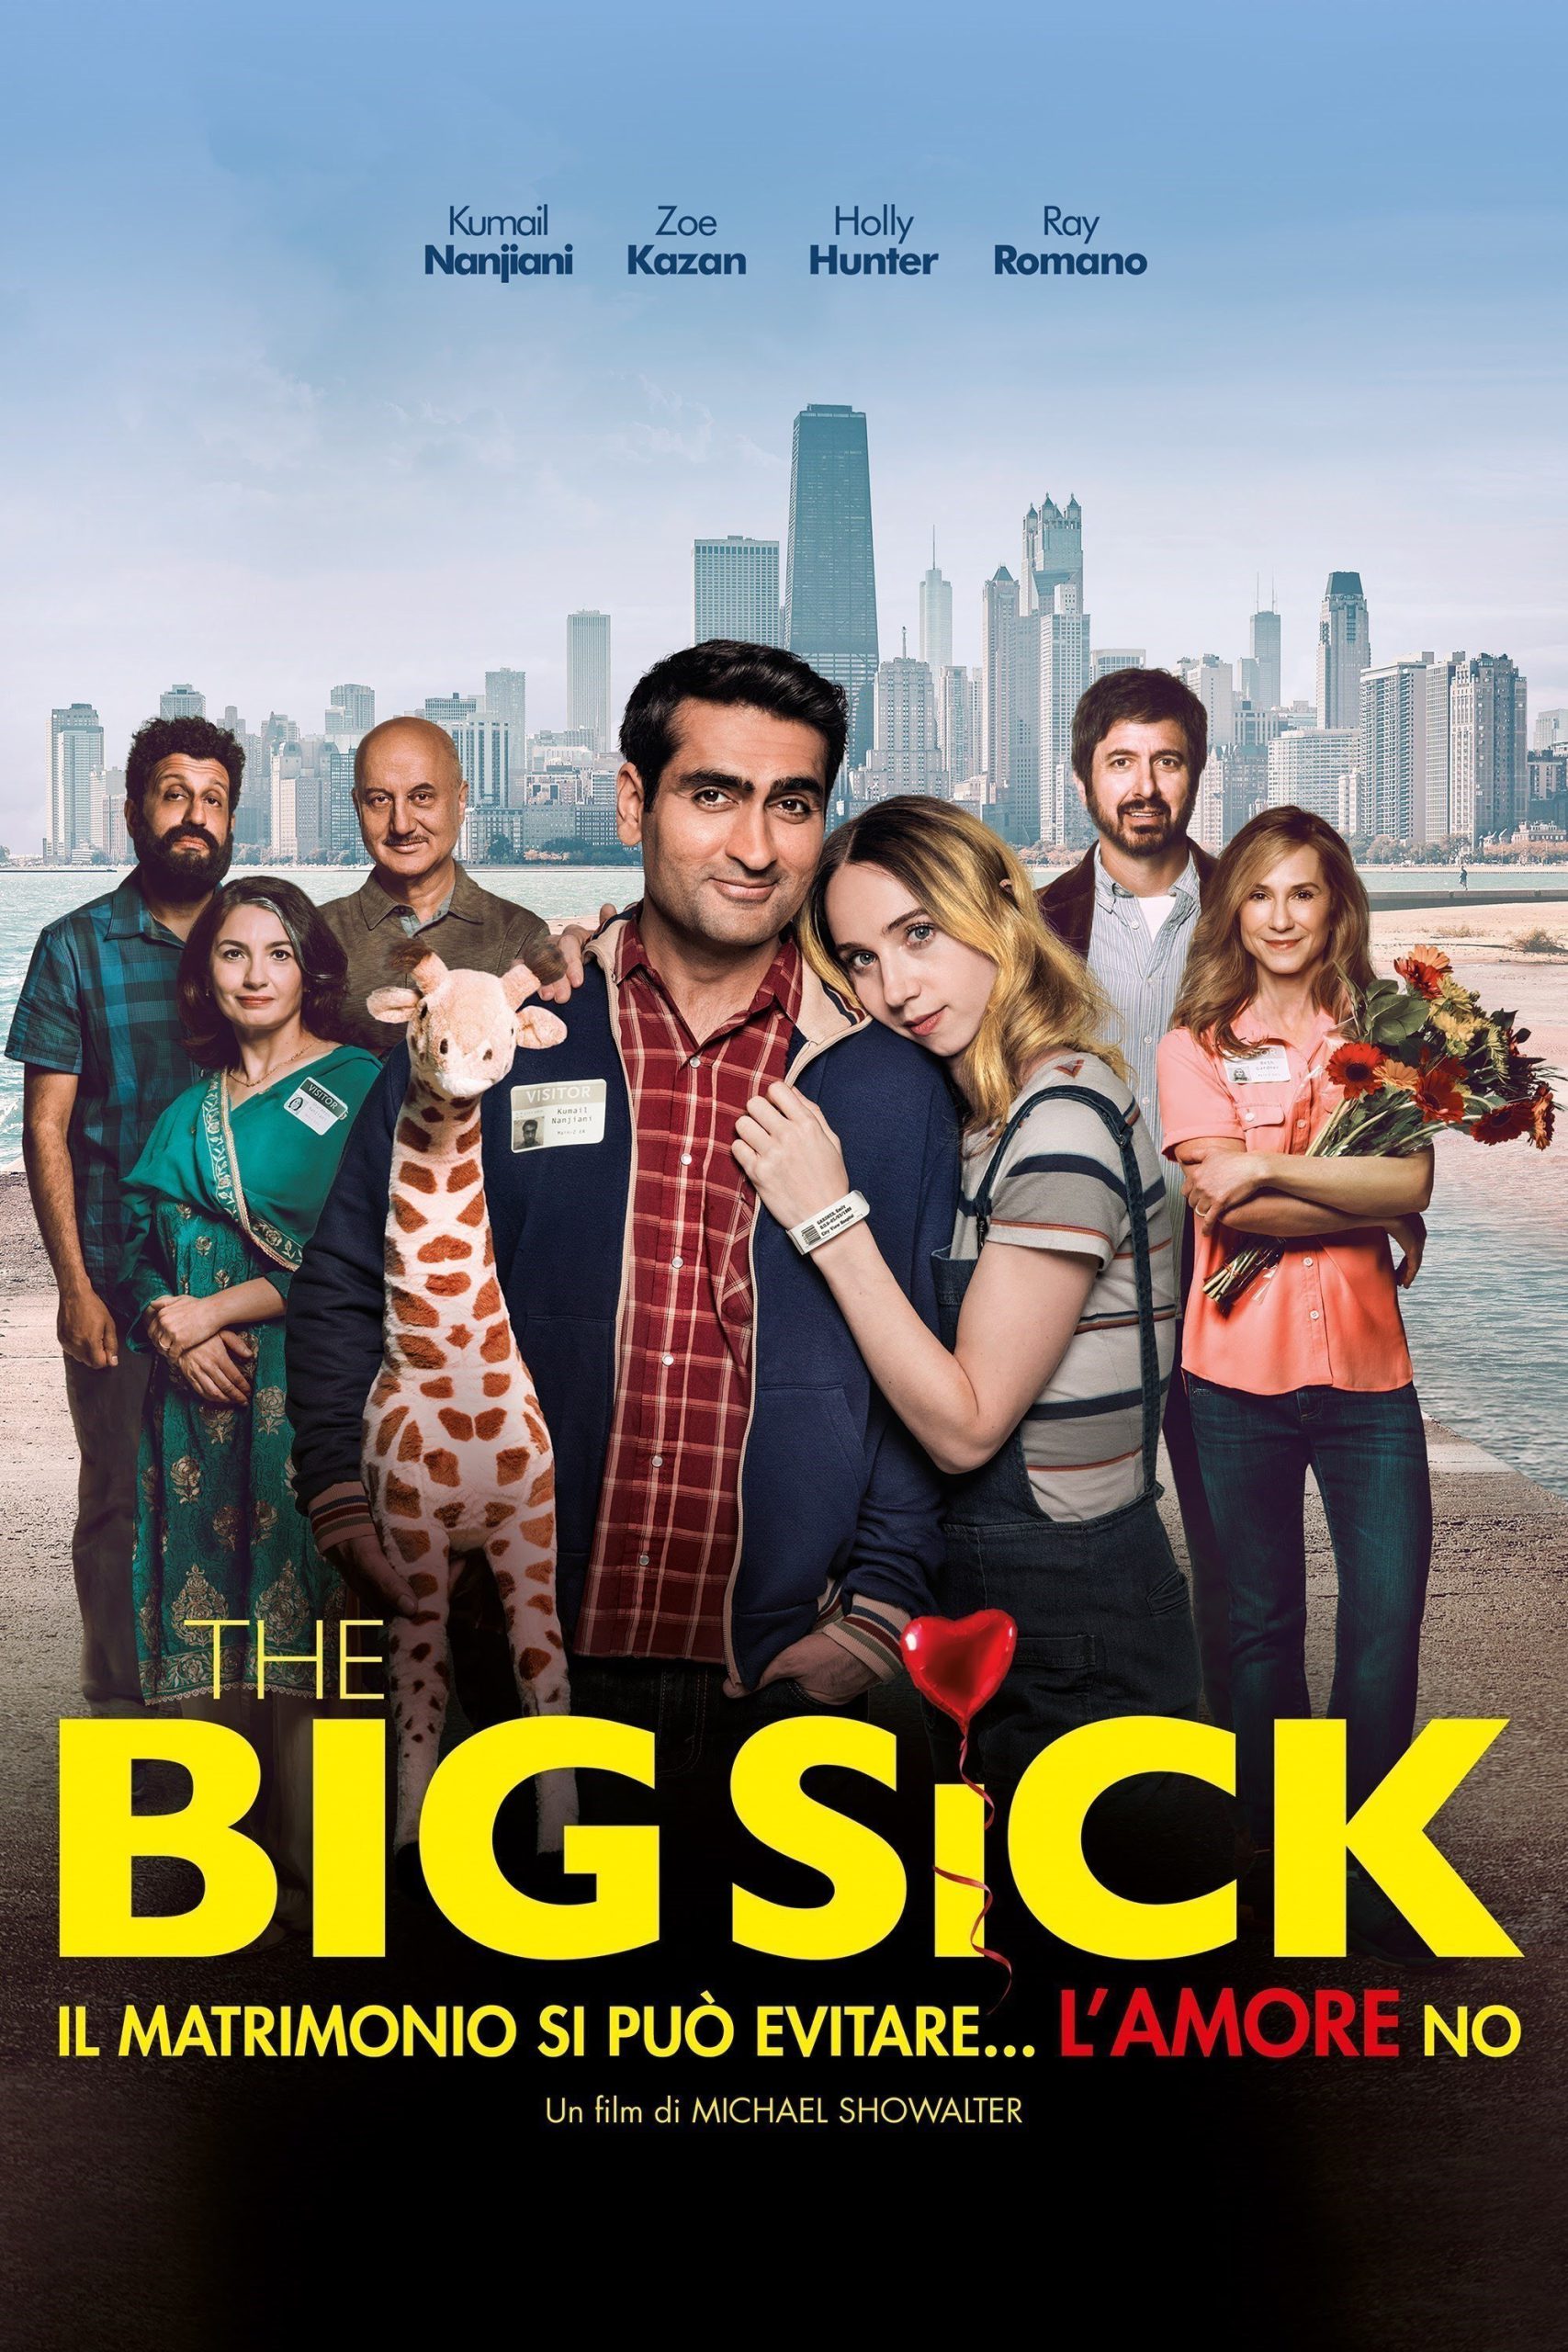 The Big Sick – Il matrimonio si può evitare… l’amore no [HD] (2017)